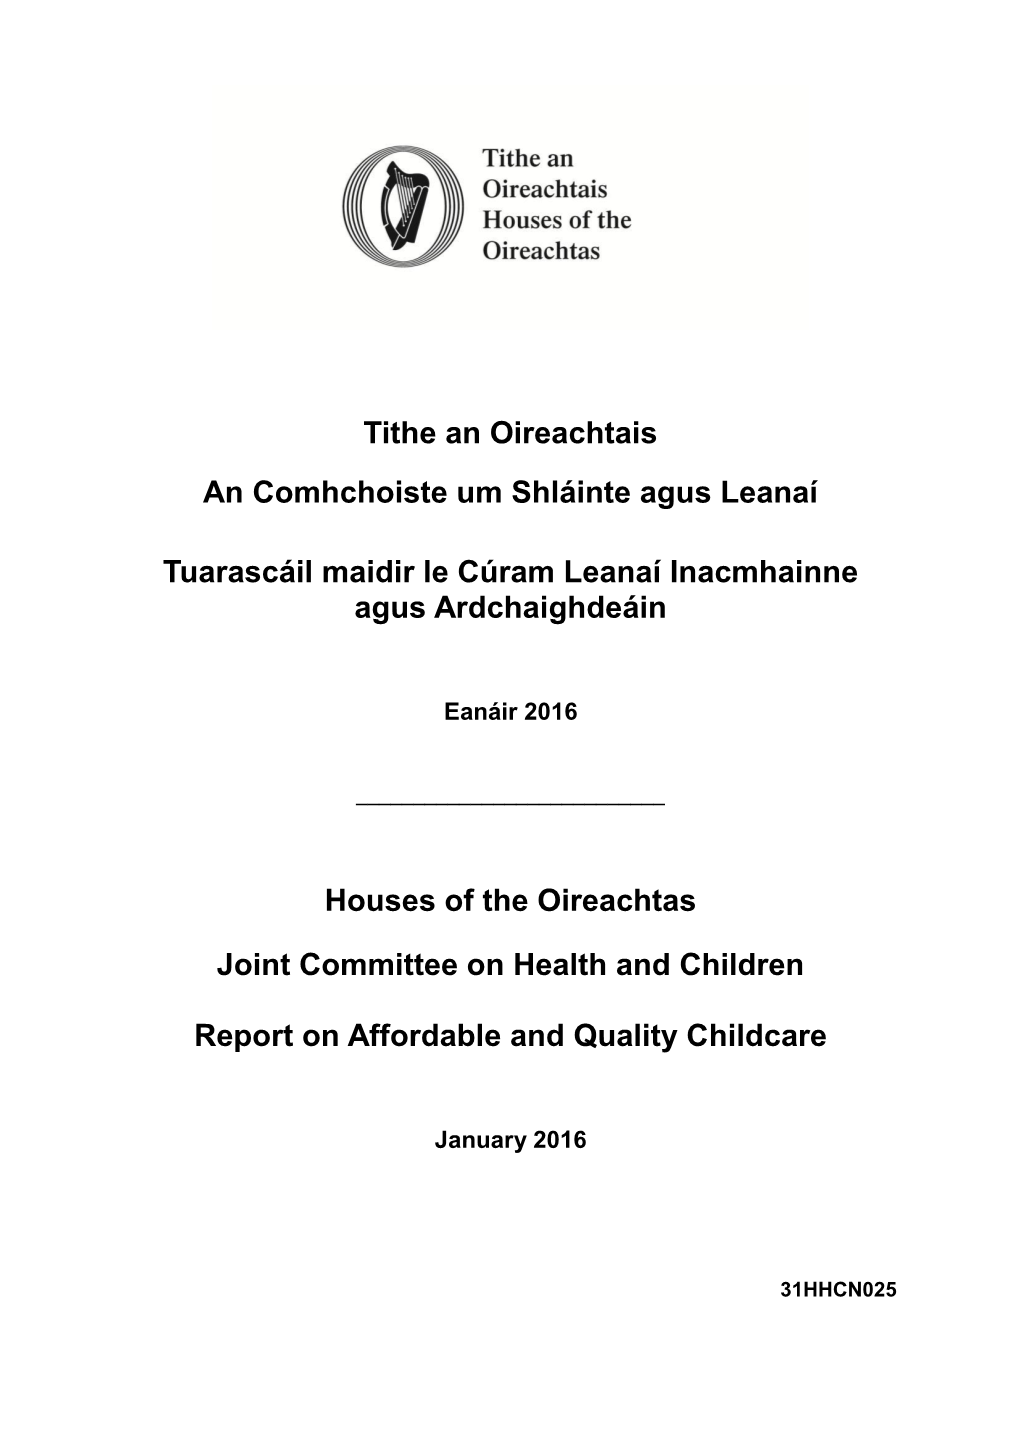 Oireachtas JCHC on Childcare